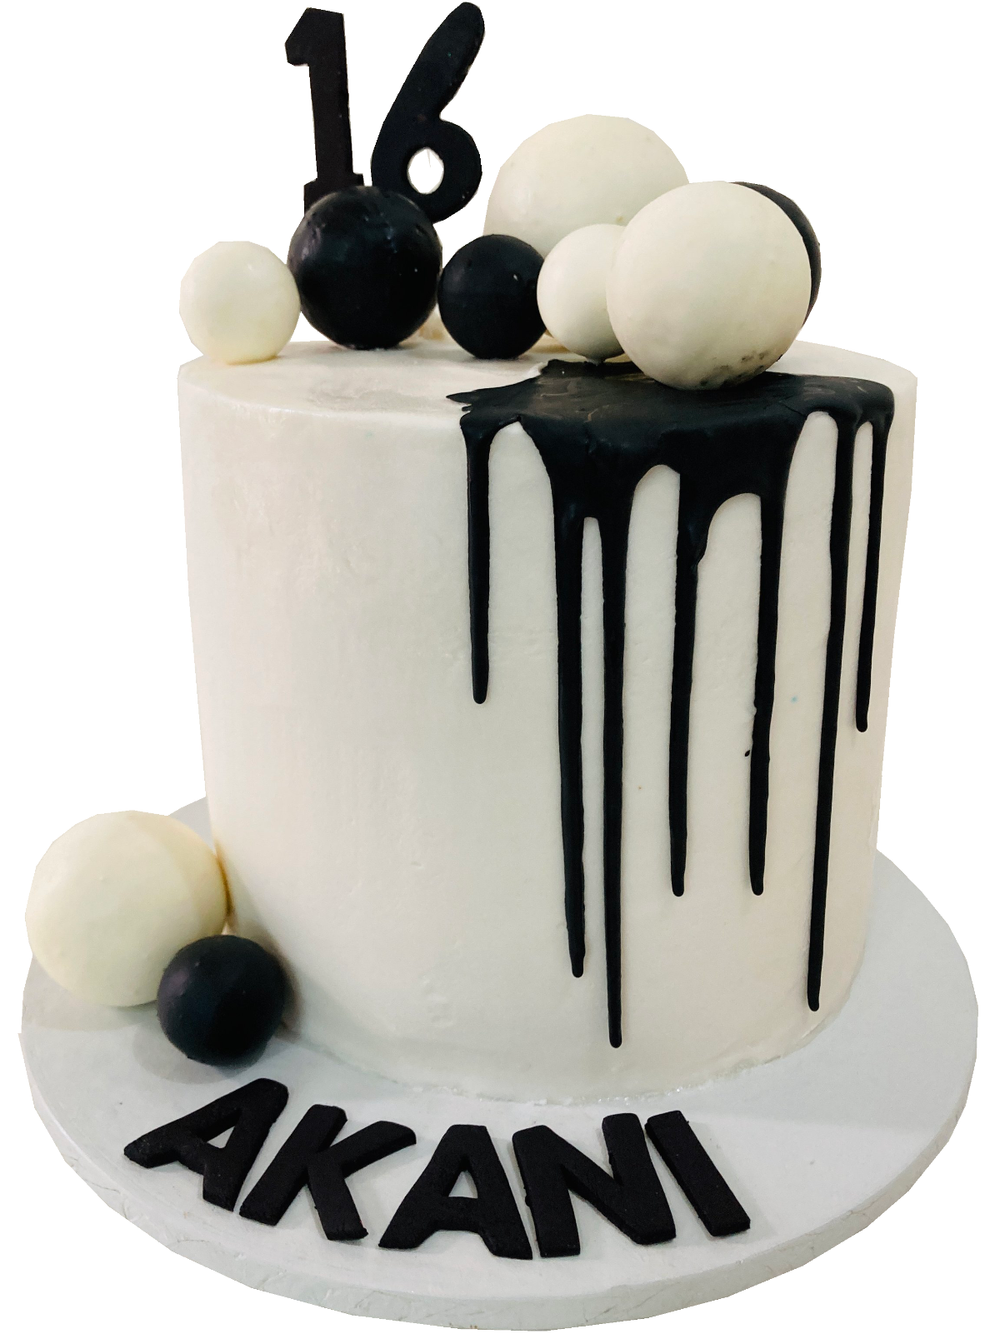 Louis Vuitton Cake Ideas  21st birthday cakes, 35th birthday